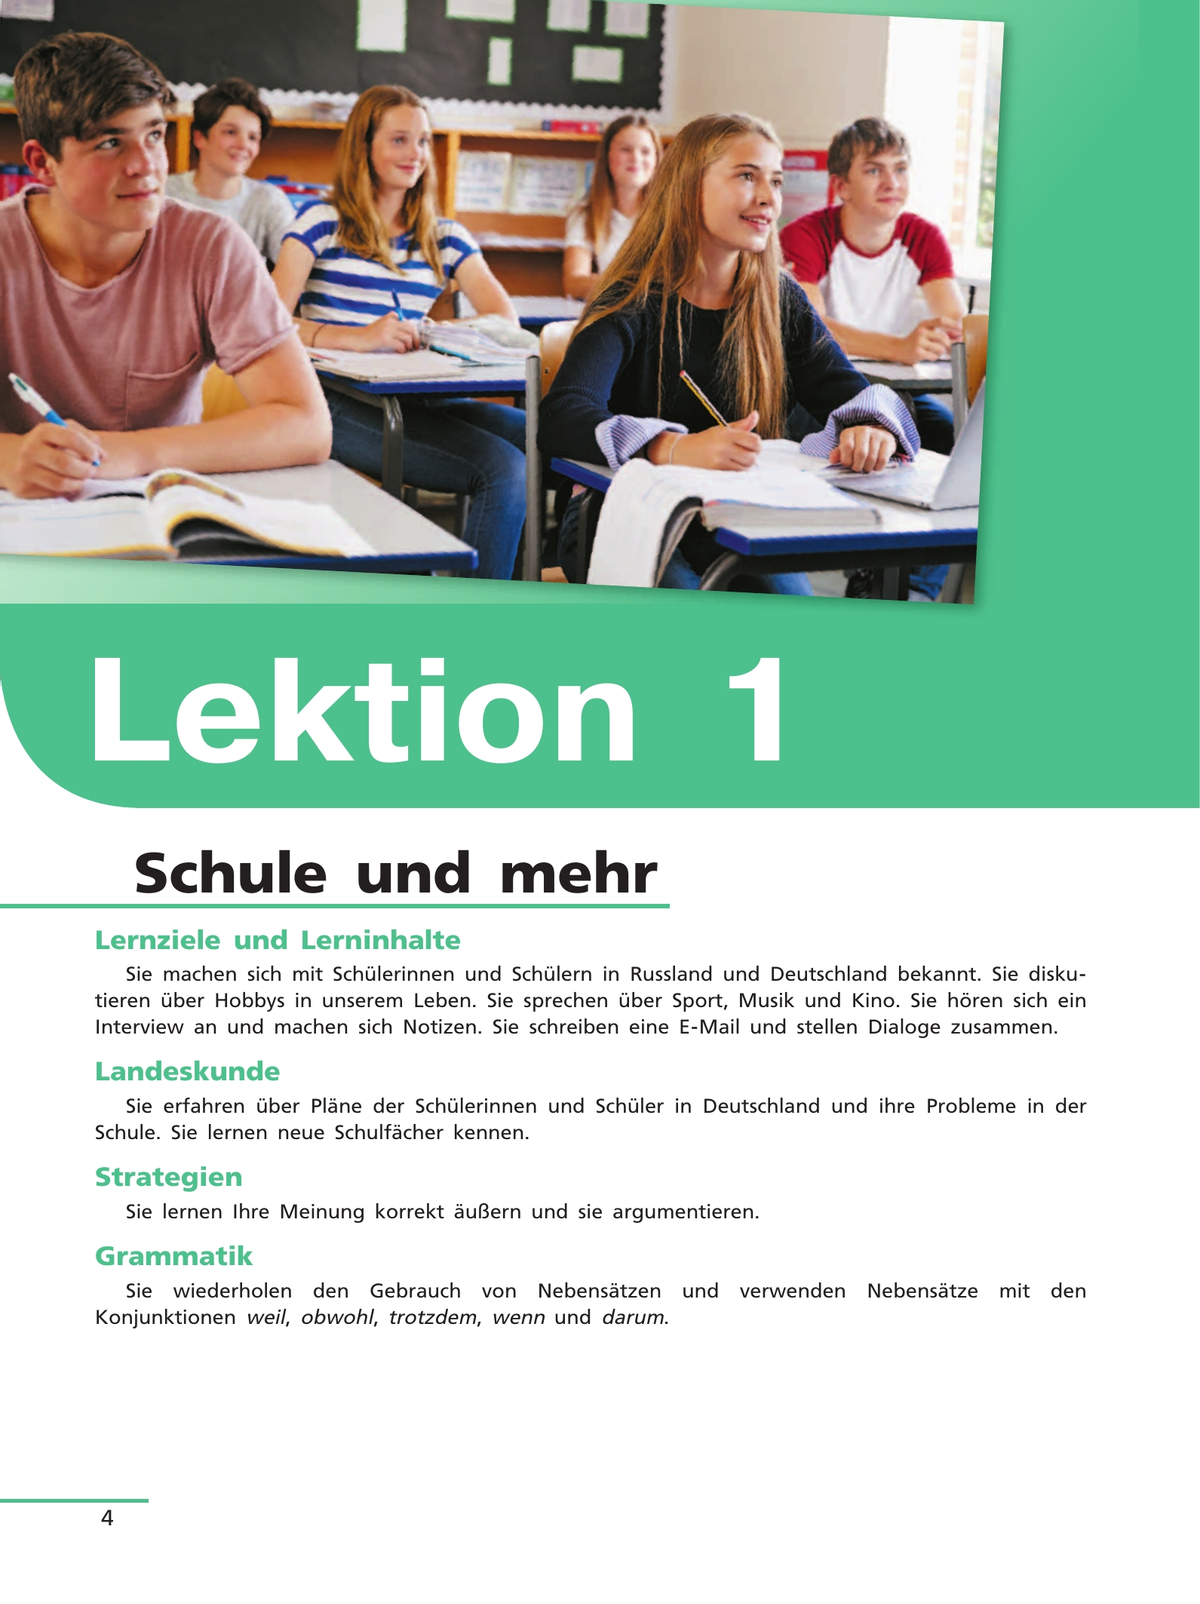 Немецкий язык. 10 класс. Учебник для общеобразовательных организаций. Базовый уровень 4